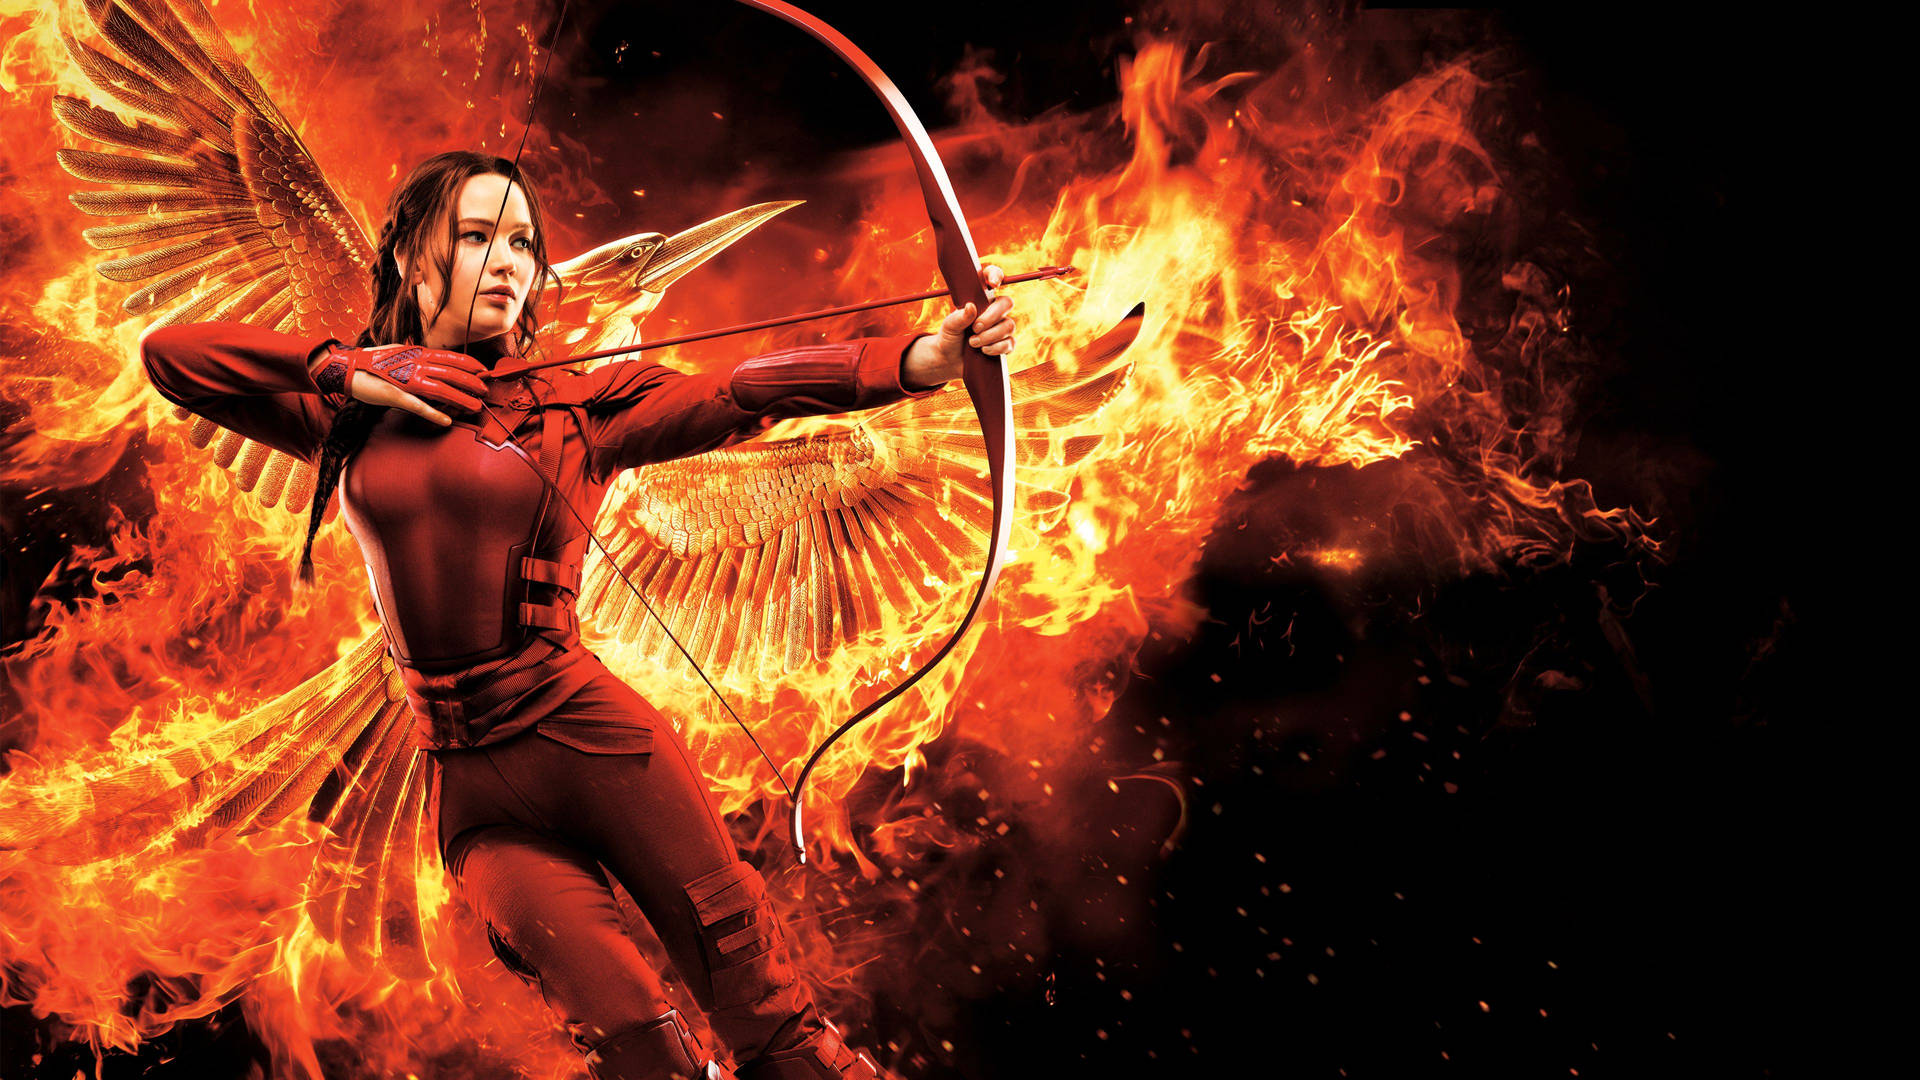 Girl On Fire The Hunger Games Wallpaper